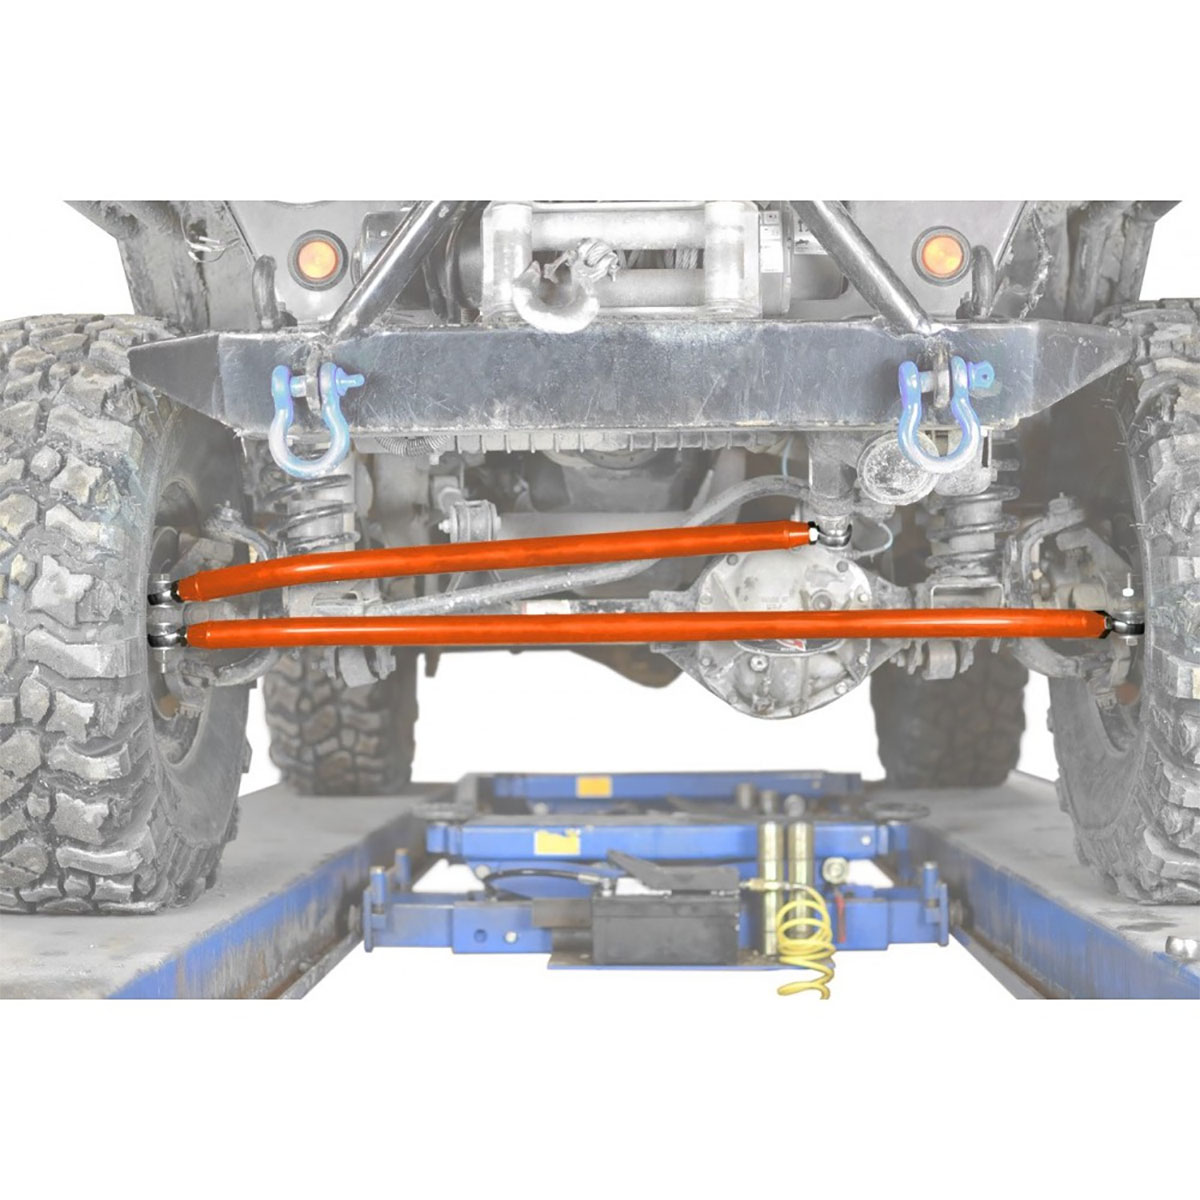 Jeep TJ Wrangler Orange Crossover Steering Kit